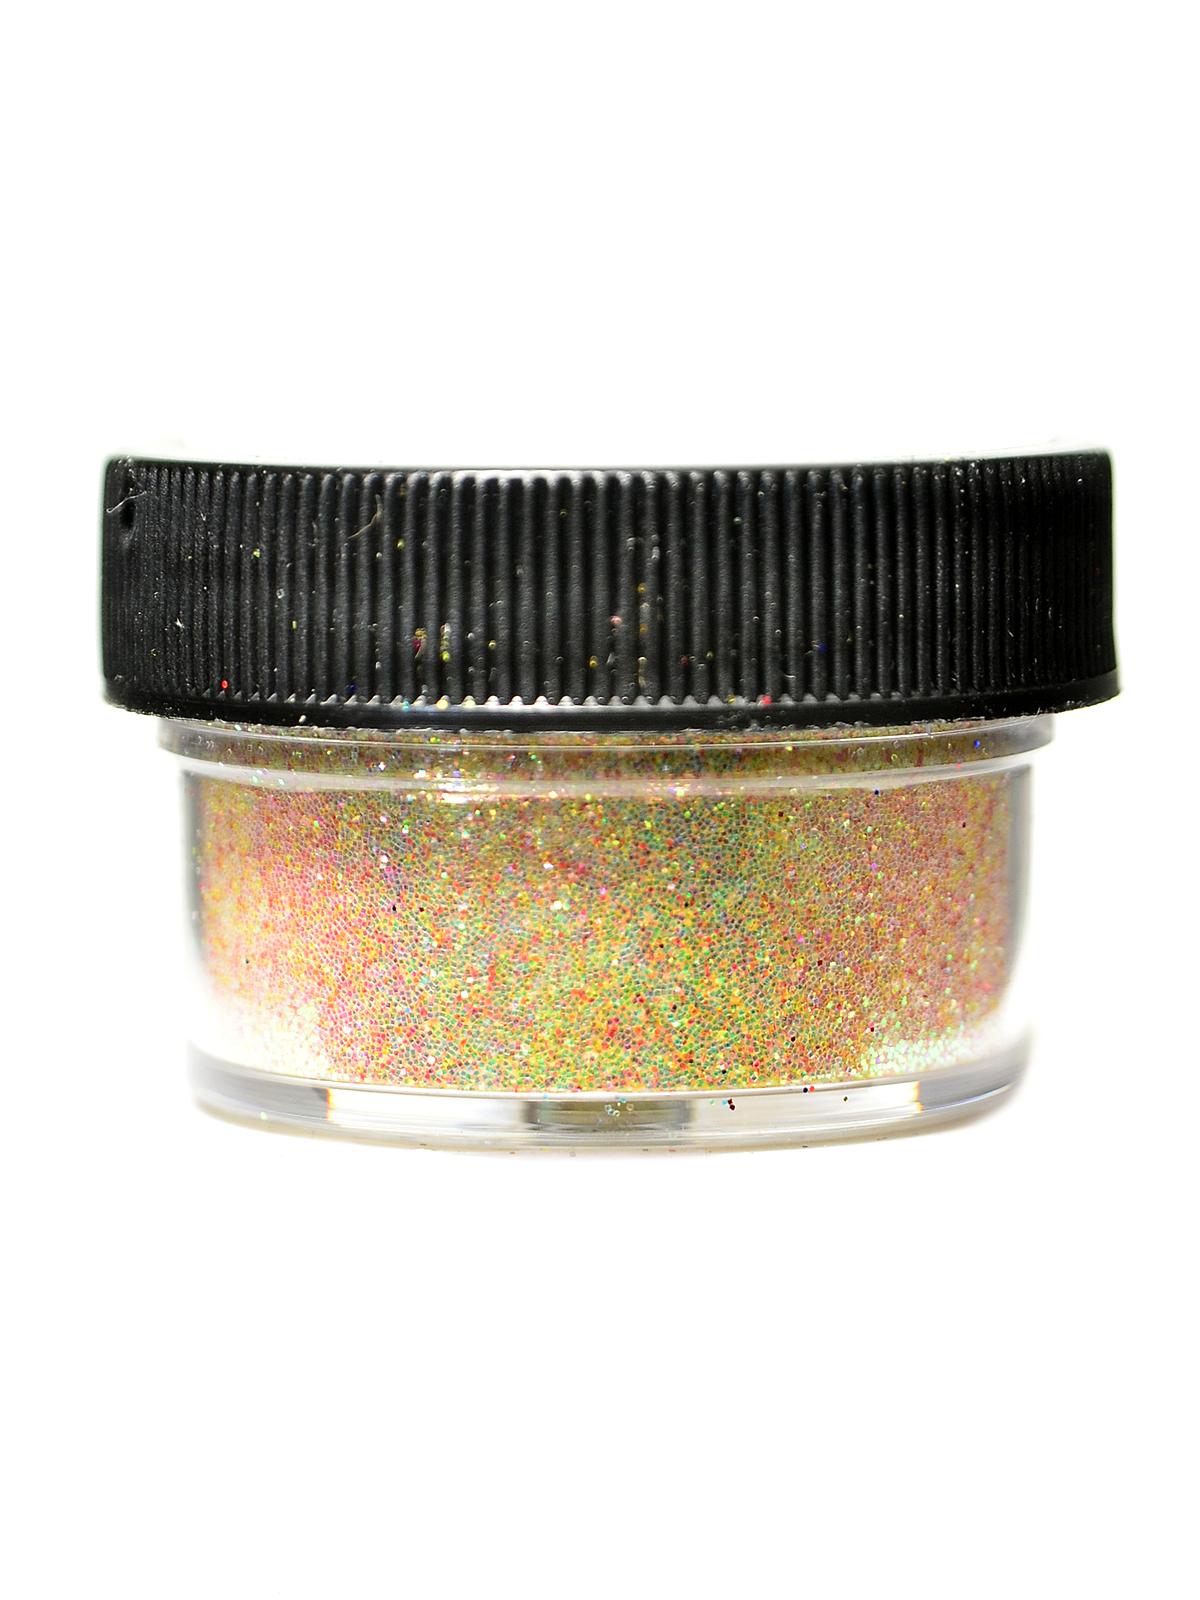 Ultrafine Transparent Glitter Flax 1 2 Oz. Jar